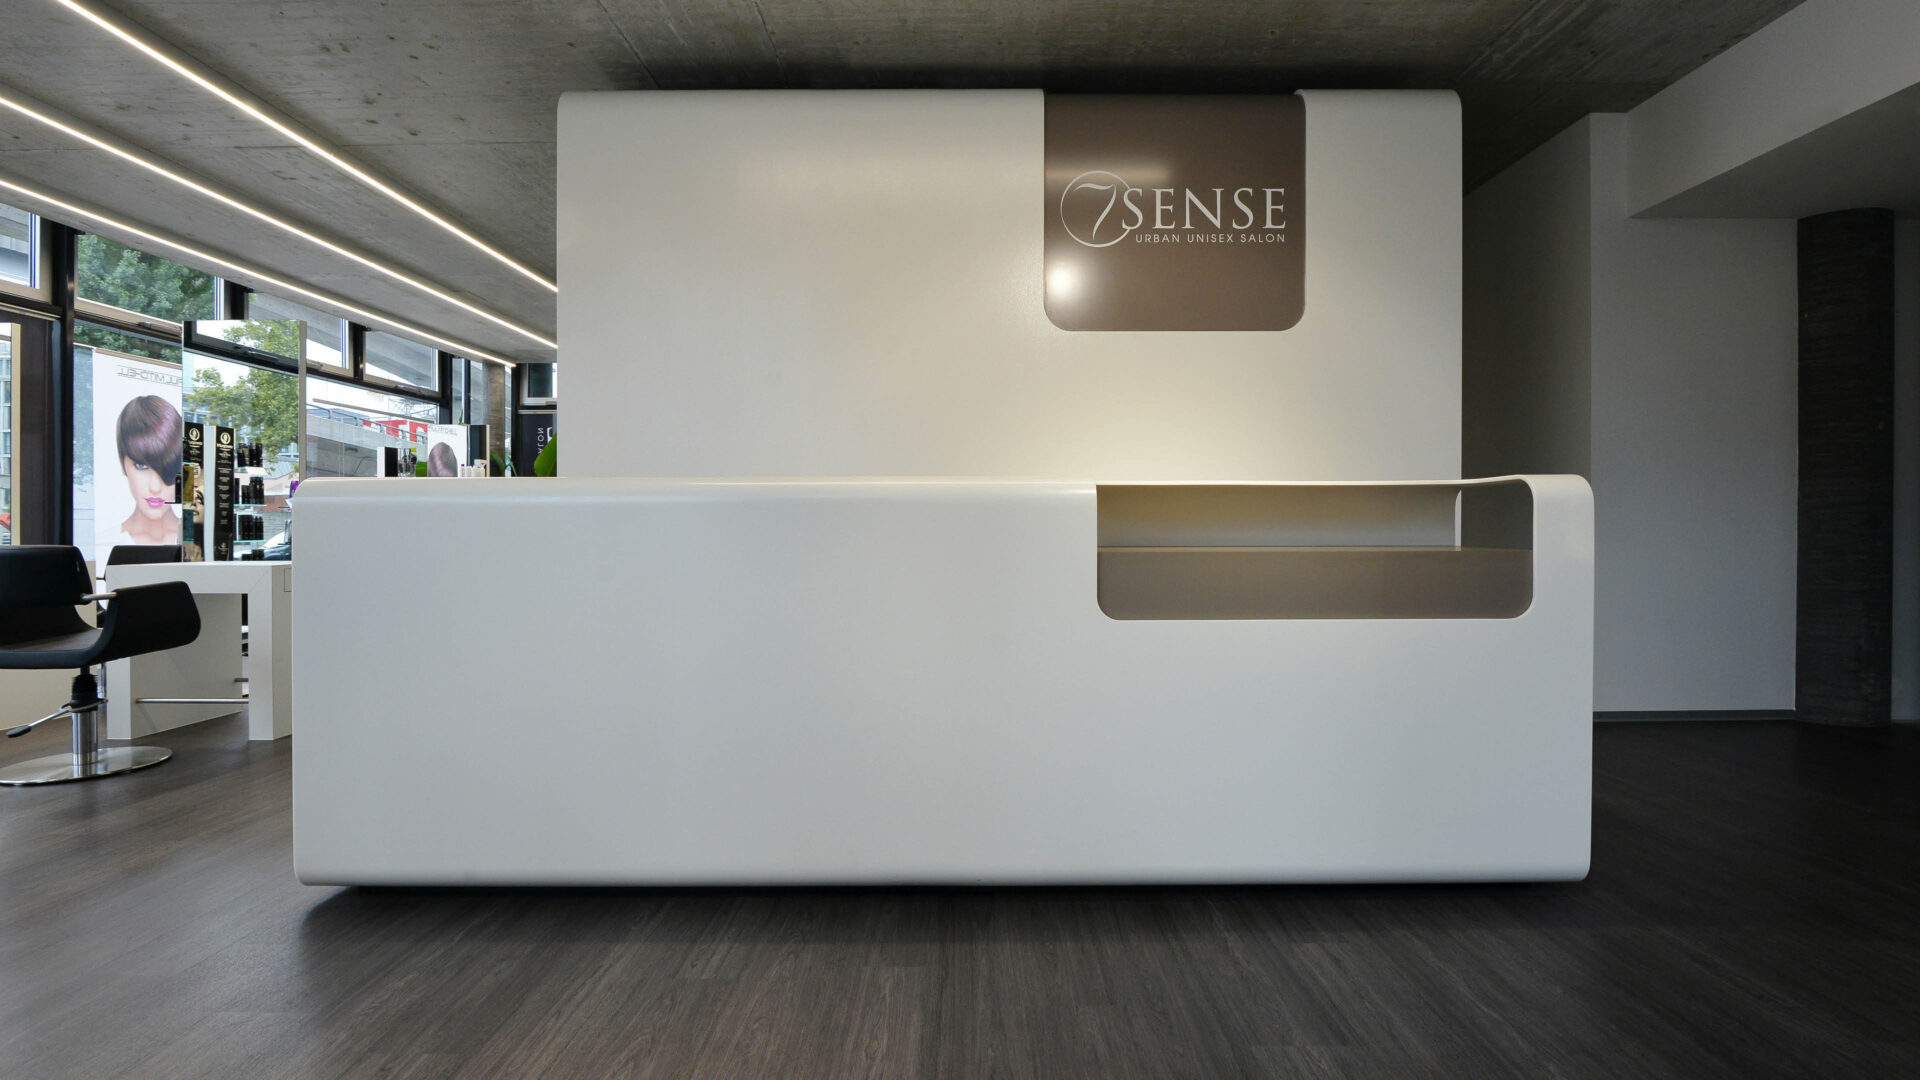 Architecture office, interior design - Daniel Huber architecture & design - 7Sense